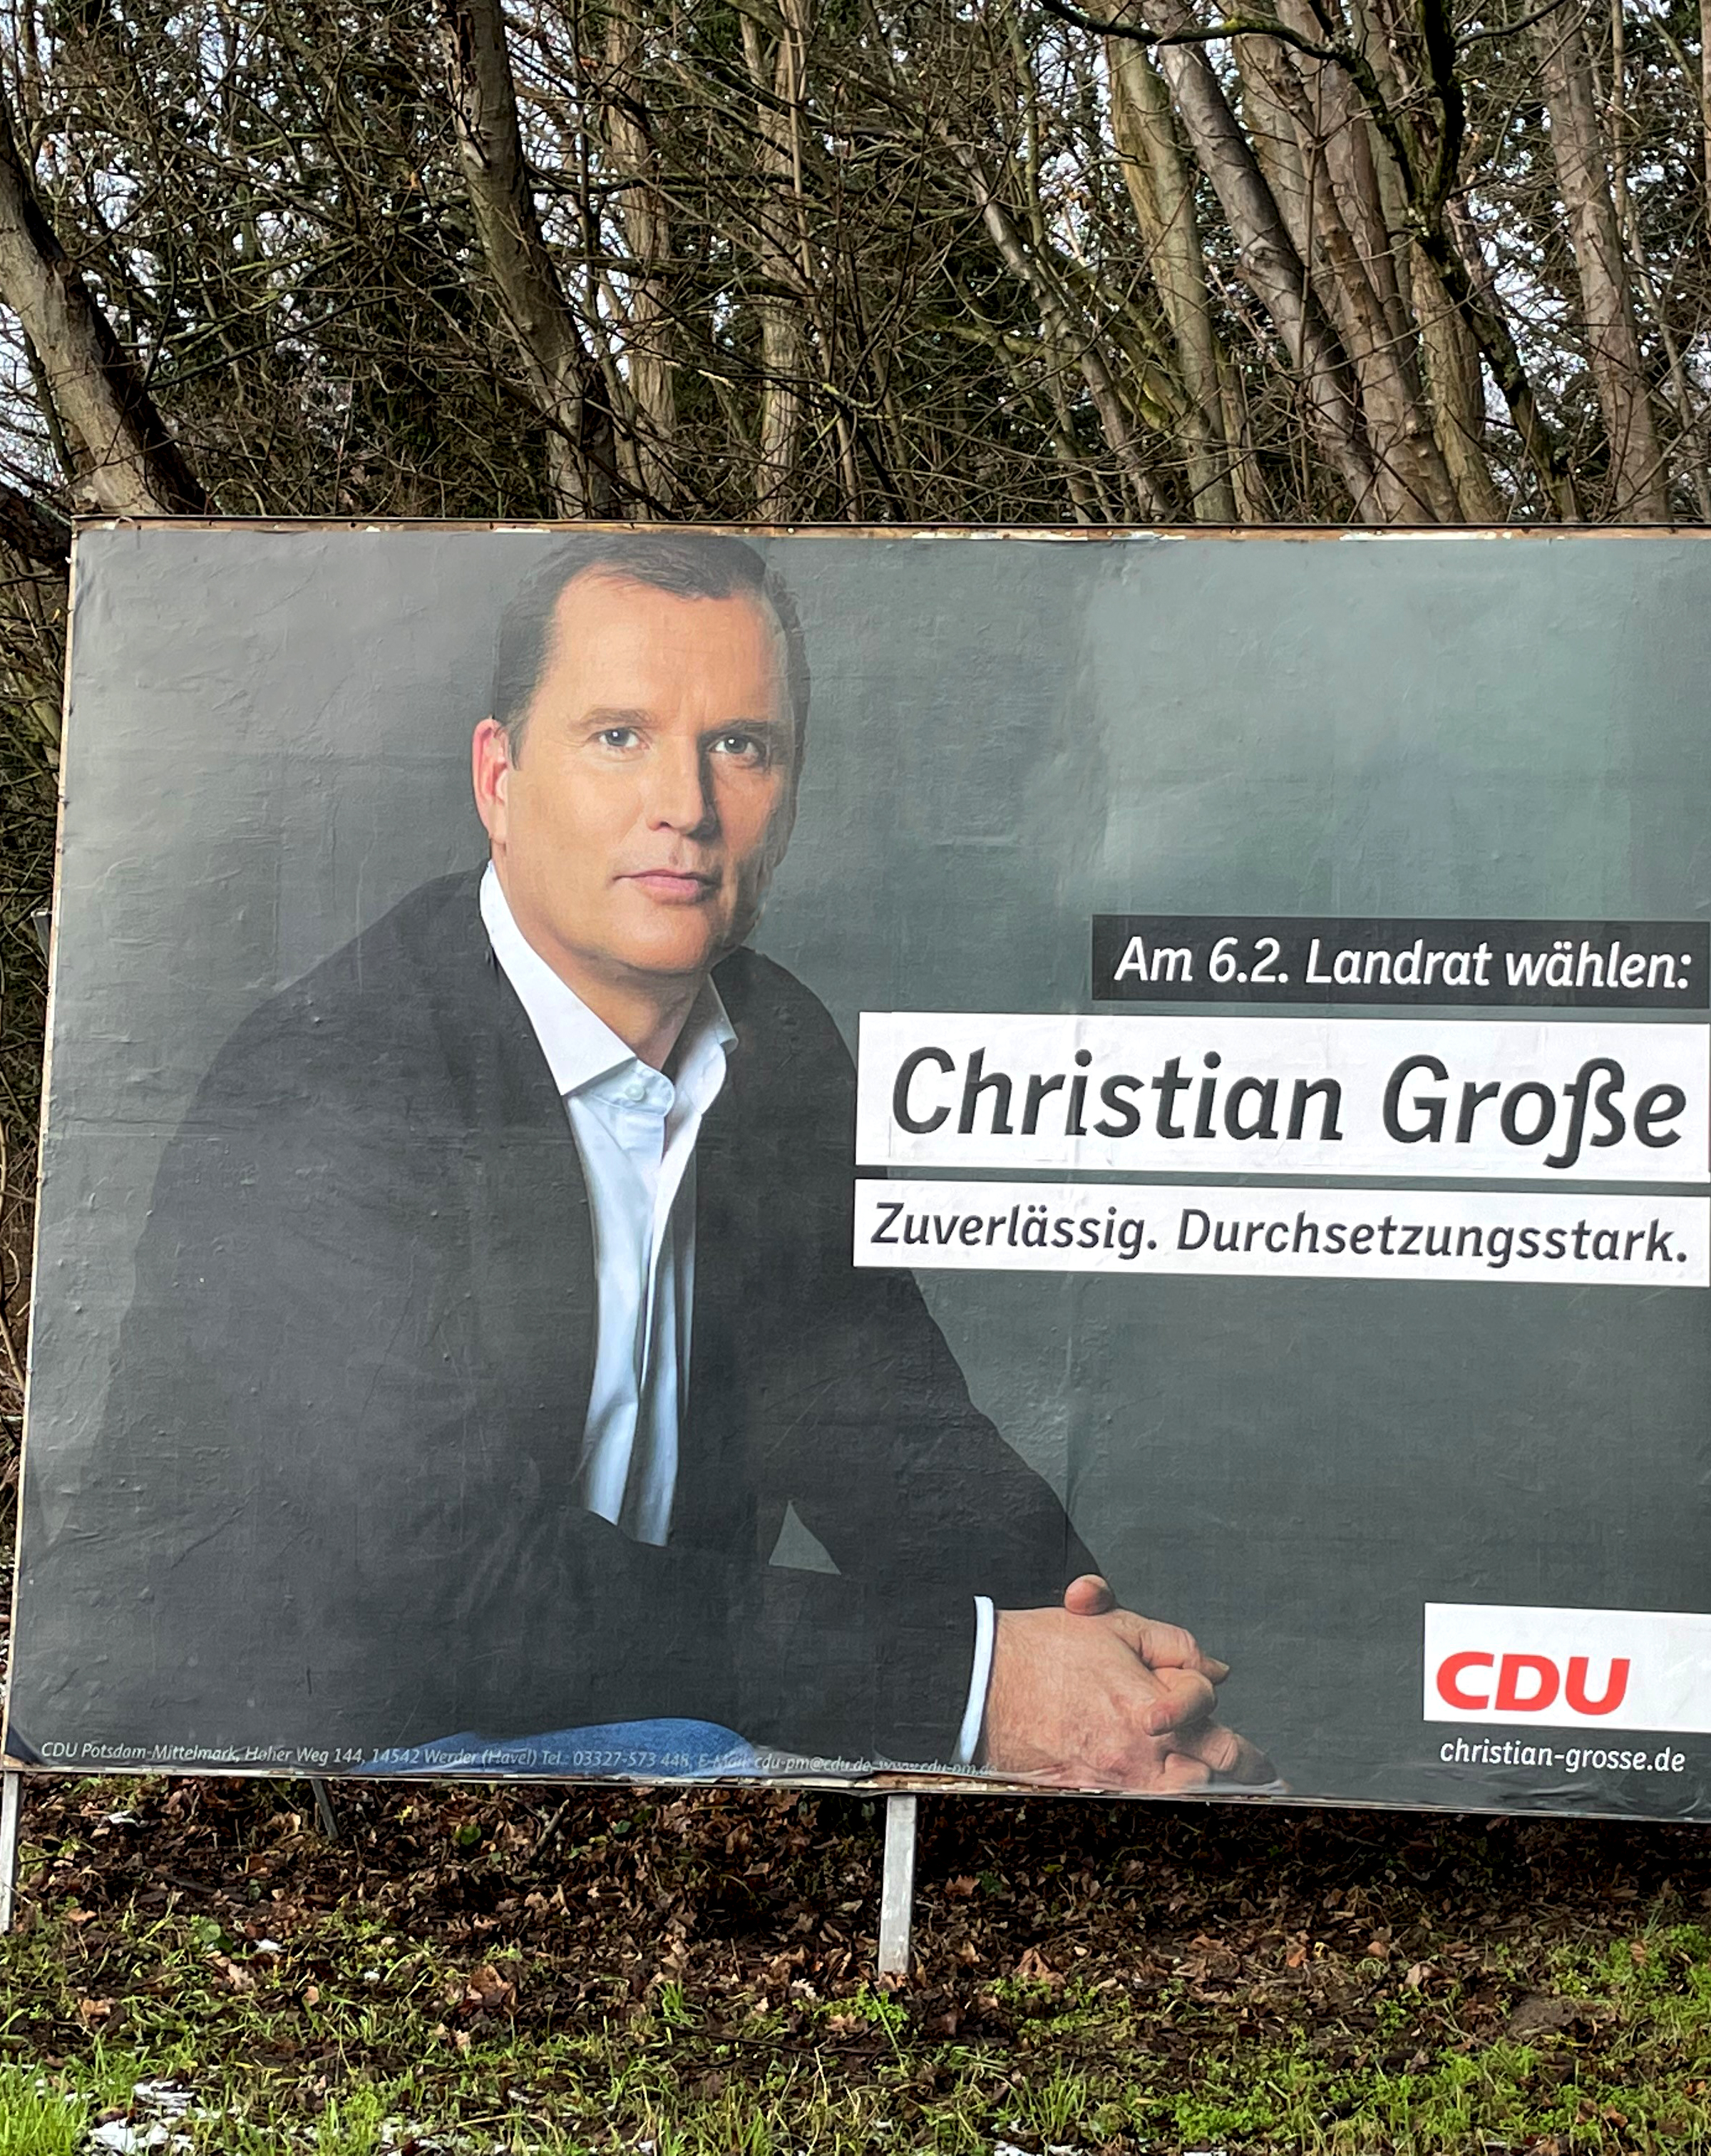 10.10.2022 - Bilder zur Landratswahl - Großplakat am Stahnsdorfer Hof